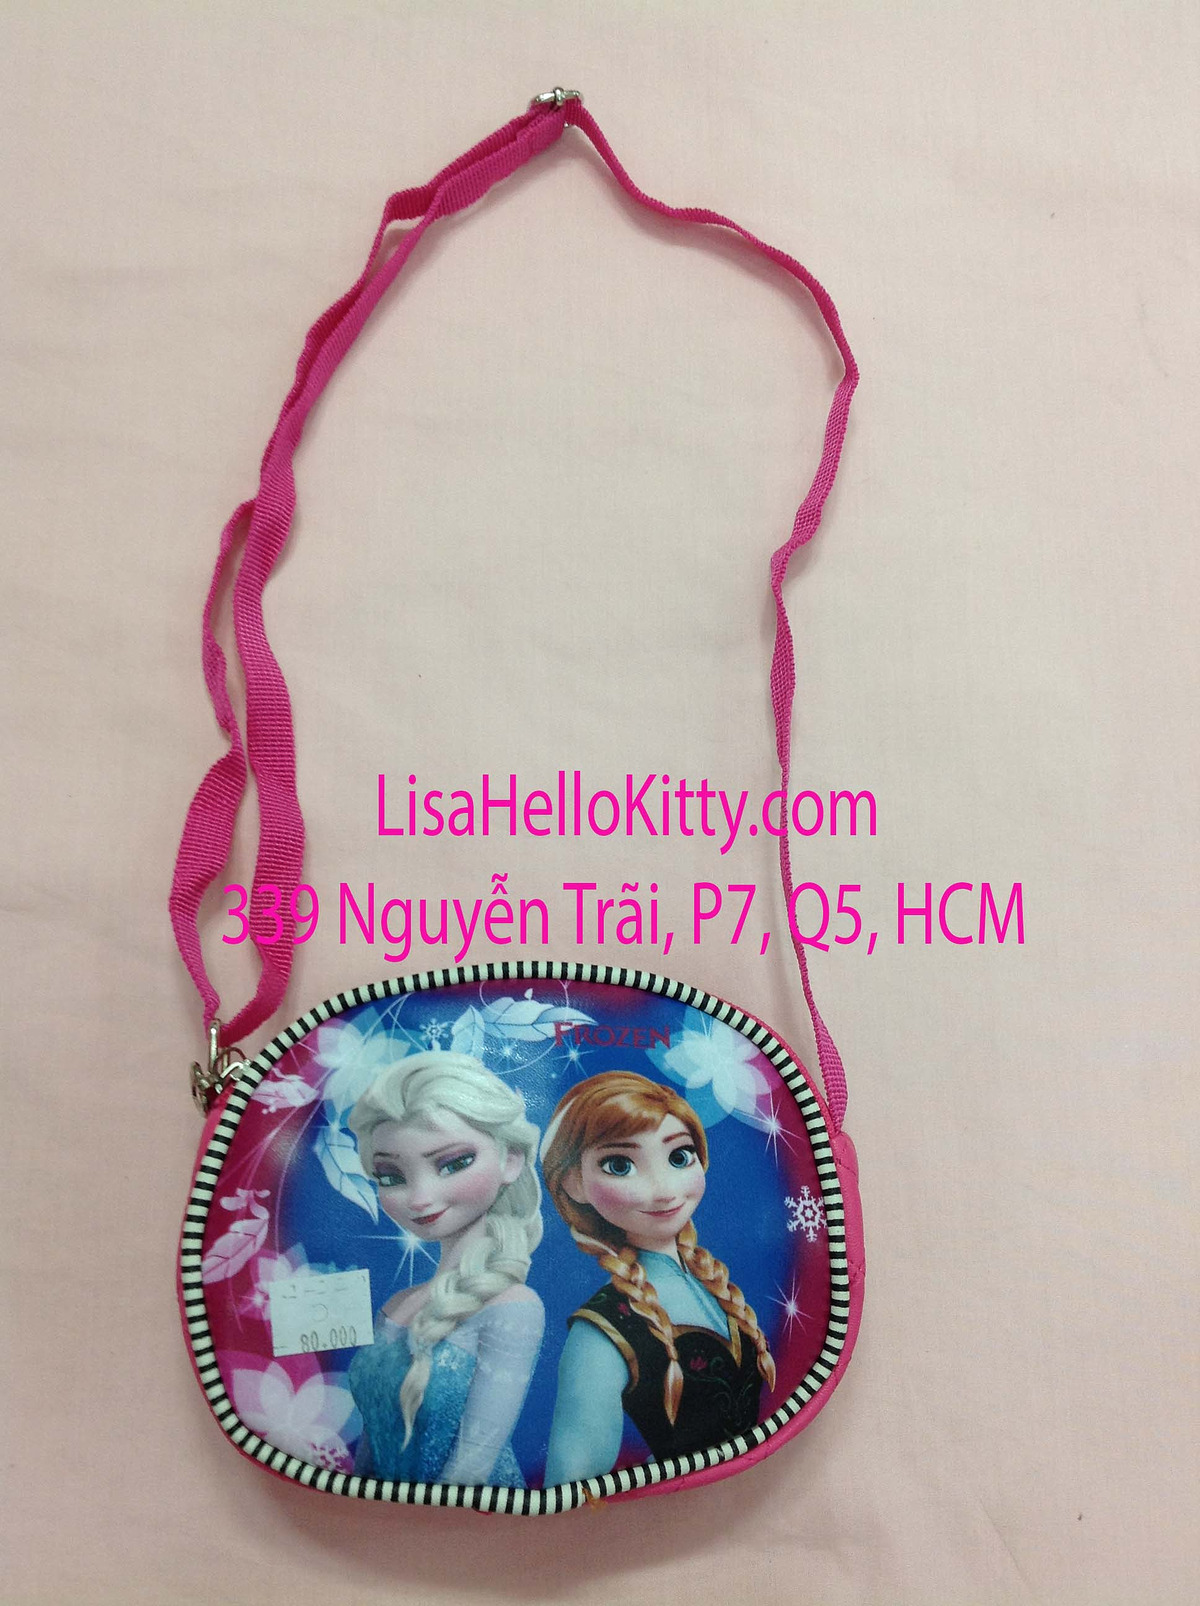 Lisa Shop - Túi xách, túi đeo chéo Hello Kitty công chúa Elsa cho bé - 3